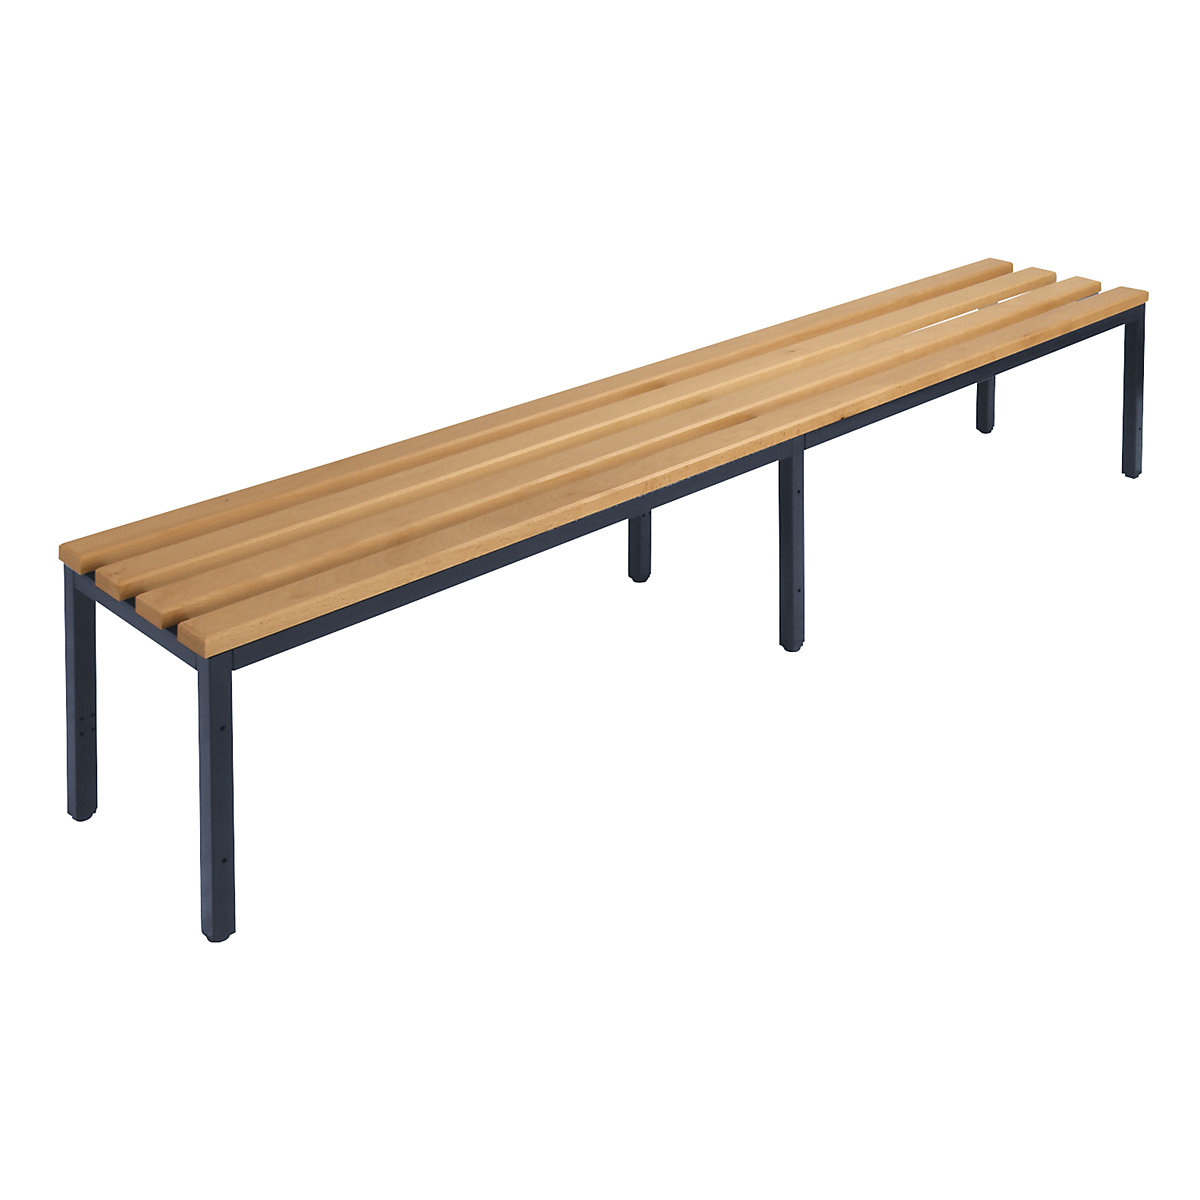 Šatnová lavice bez opěradla – Wolf, bukové dřevěné lišty, délka 2000 mm-5